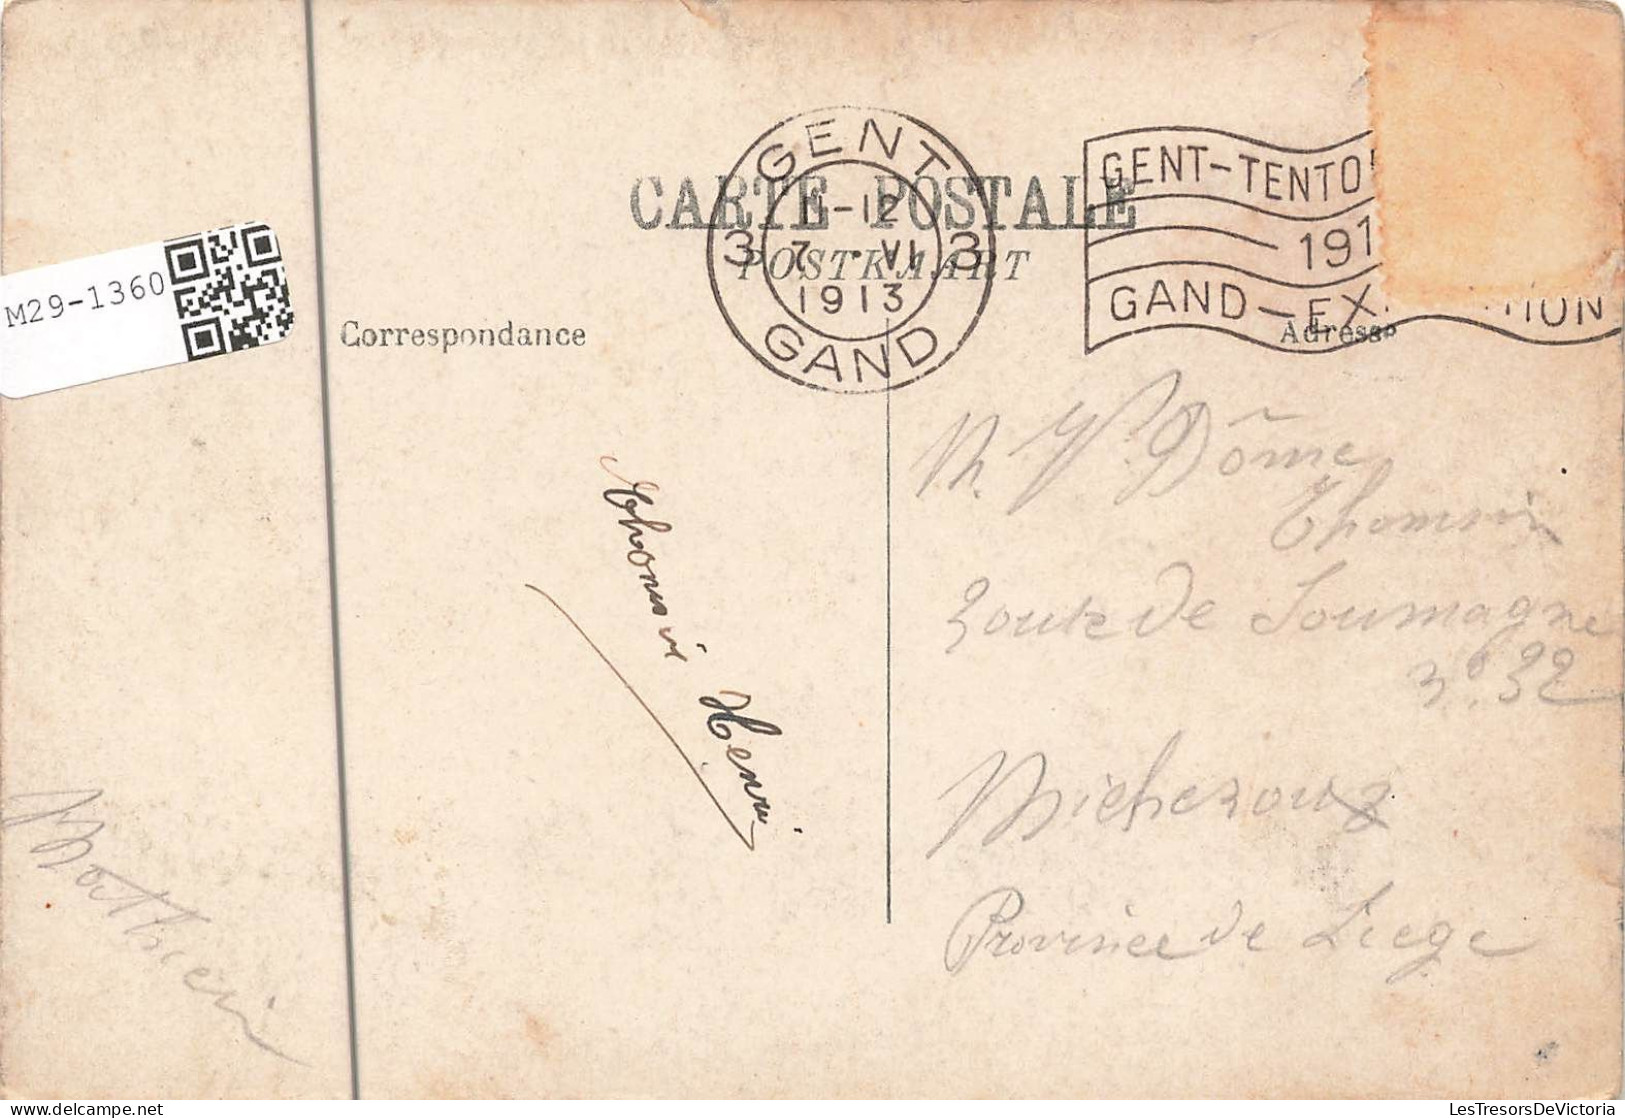 BELGIQUE - Gand - Exposition Internationale De Gand 1913 - L'entrée Principale - Carte Postale Ancienne - Gent